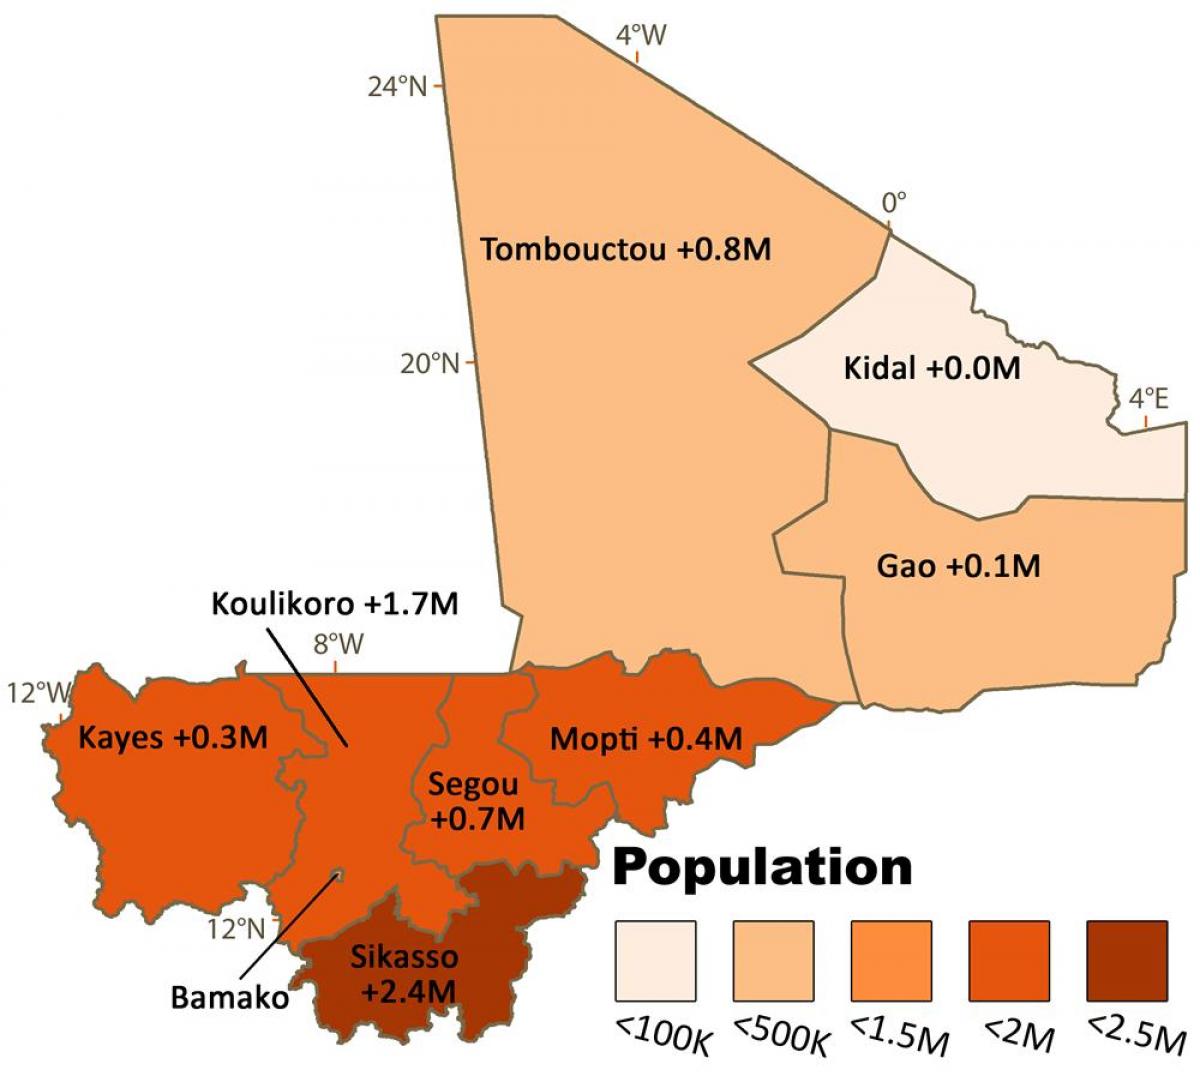 Mapa de Mali població